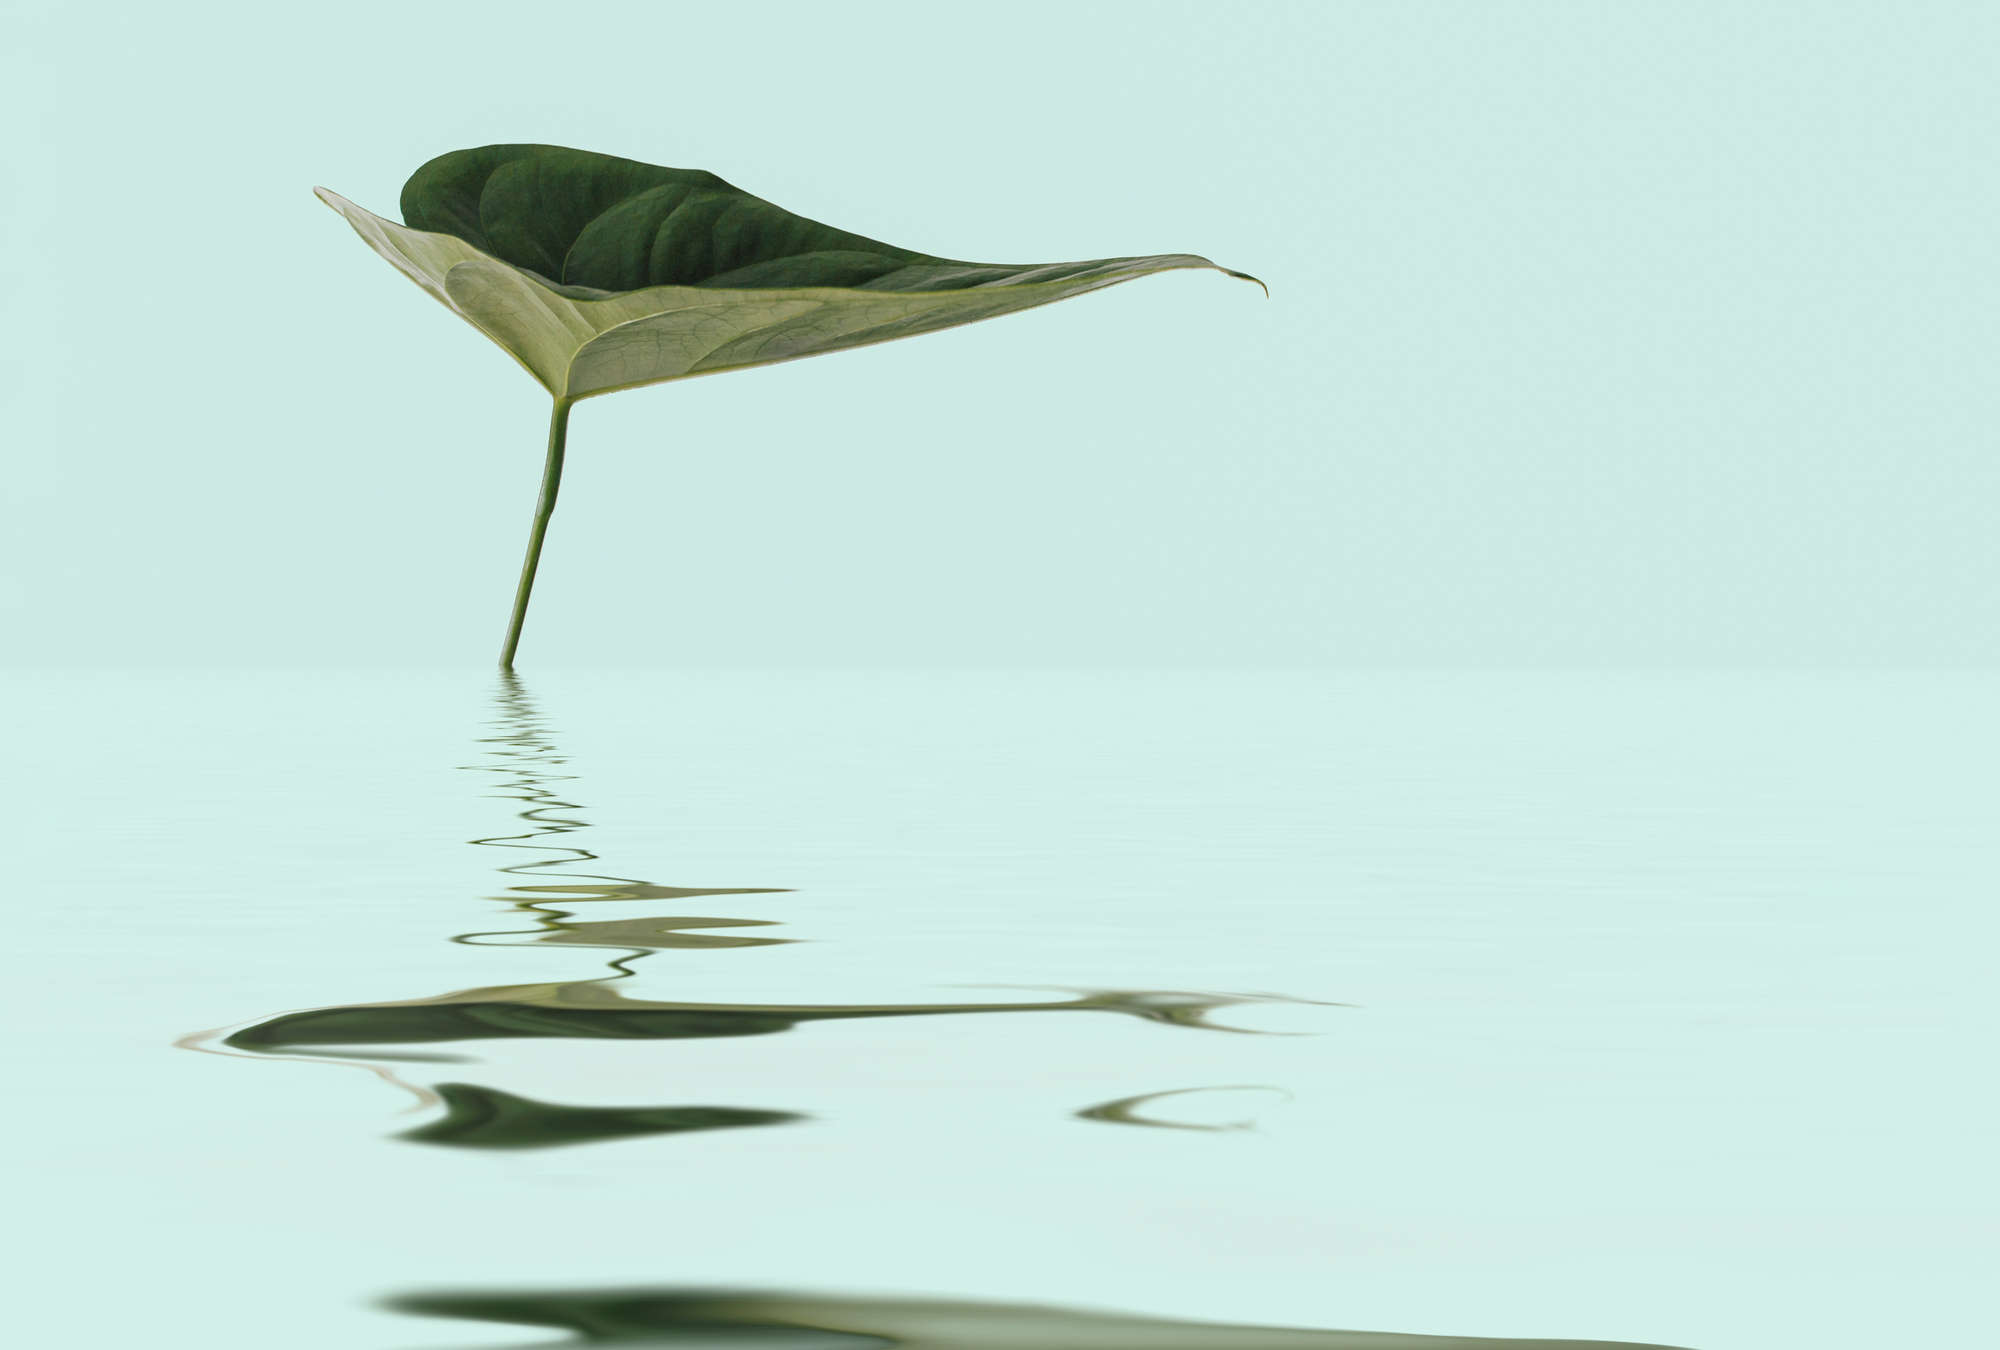             Papel pintado zen con hoja en el agua para el diseño del bienestar
        